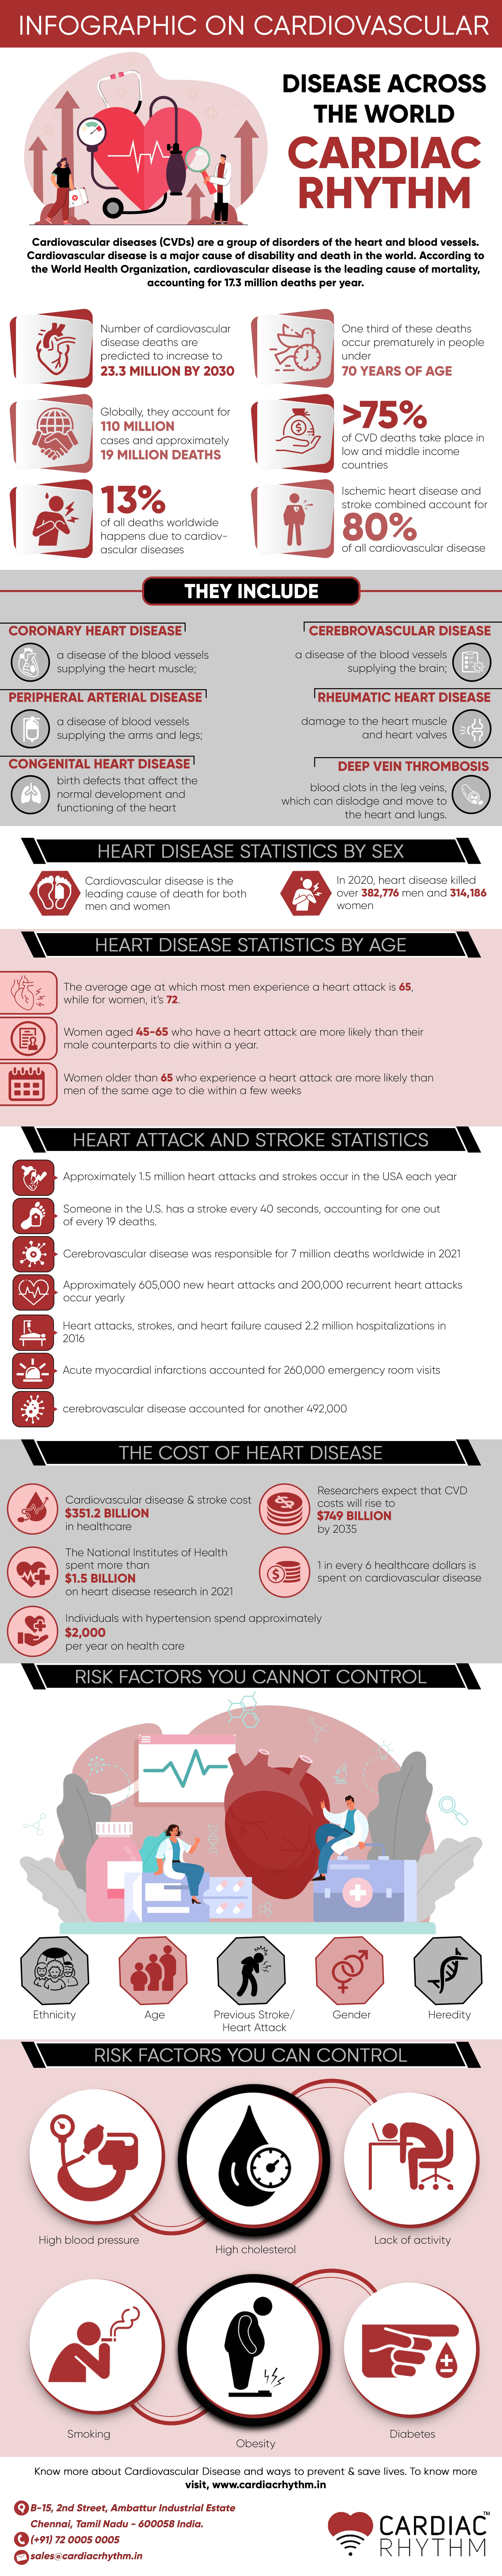 Cardiovascular Disease Across The World